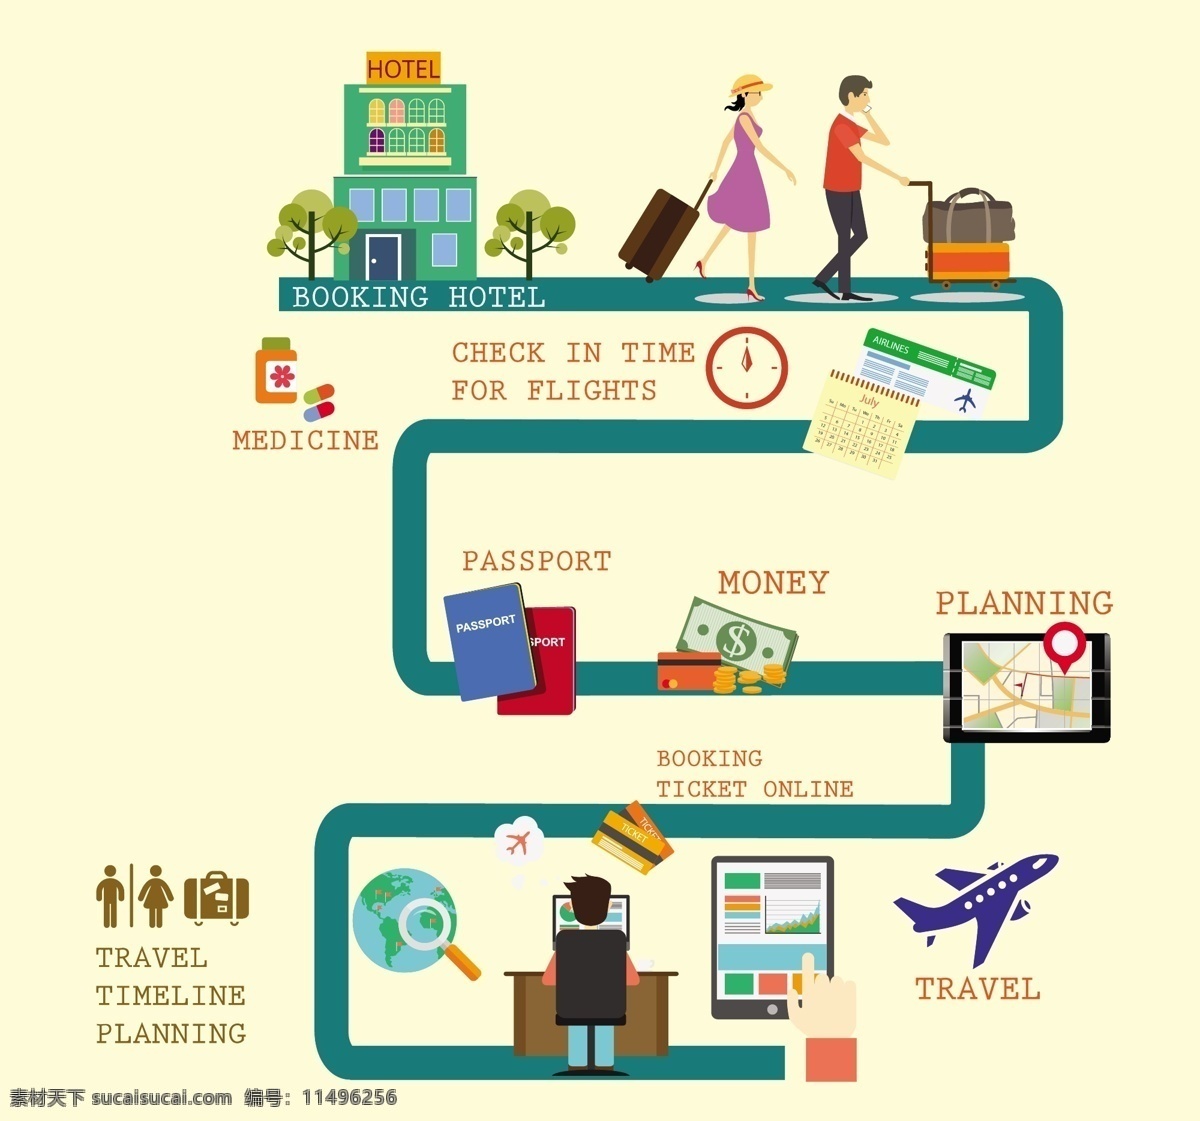 旅行 时间表 规划 元素 旅行时间表 时间表设计 矢量素材 行李 飞机 旅游